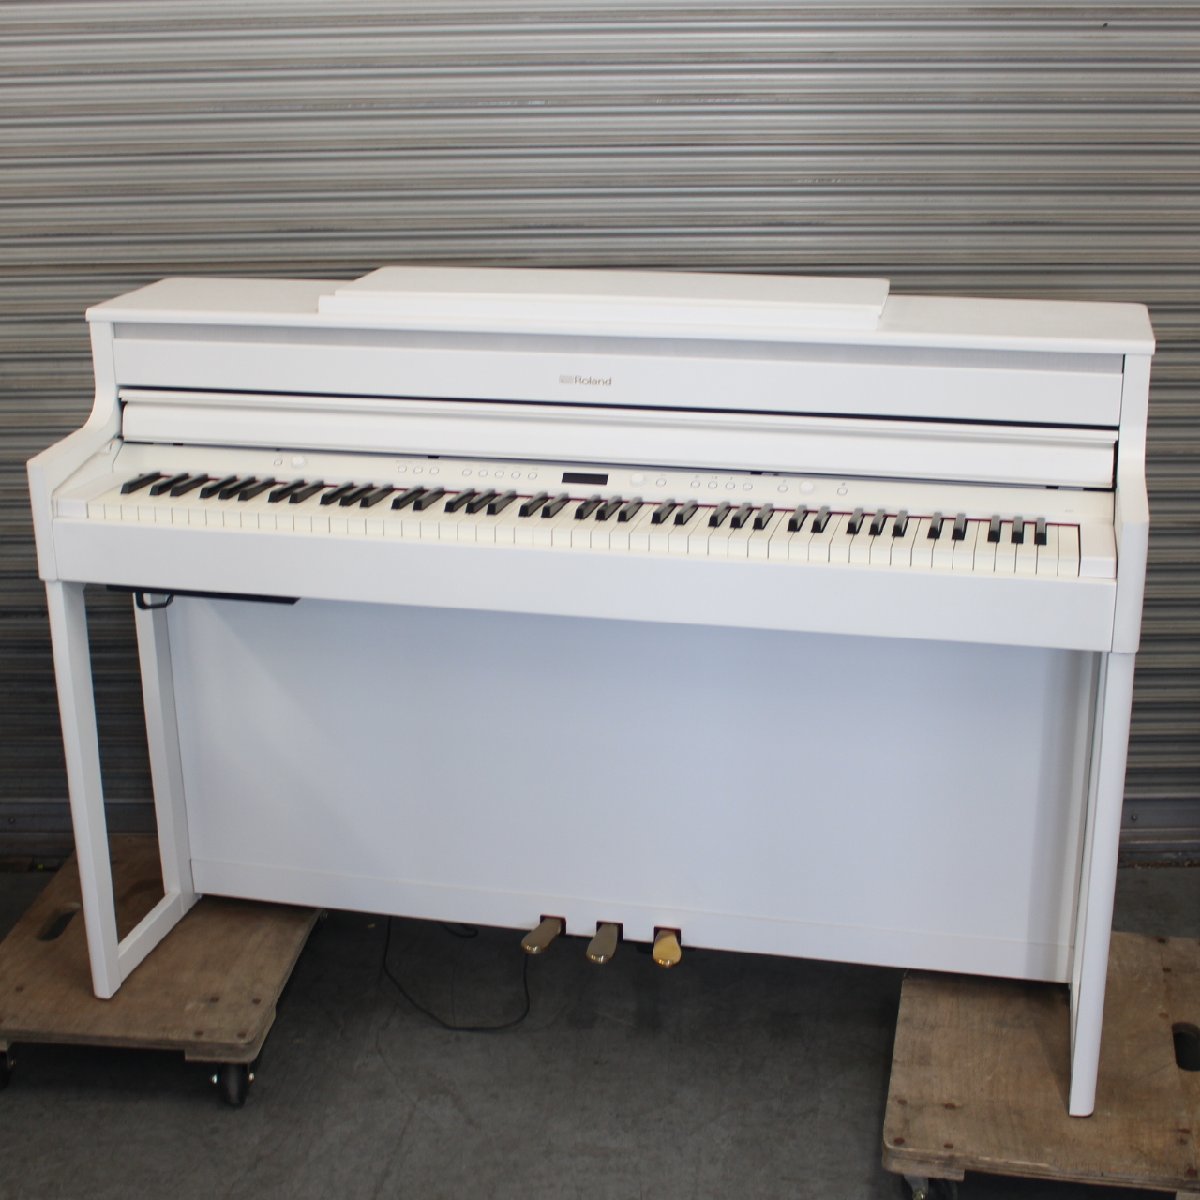 横浜市神奈川区にて ローランド 電子ピアノ HP704 2019年製 を出張買取させて頂きました。